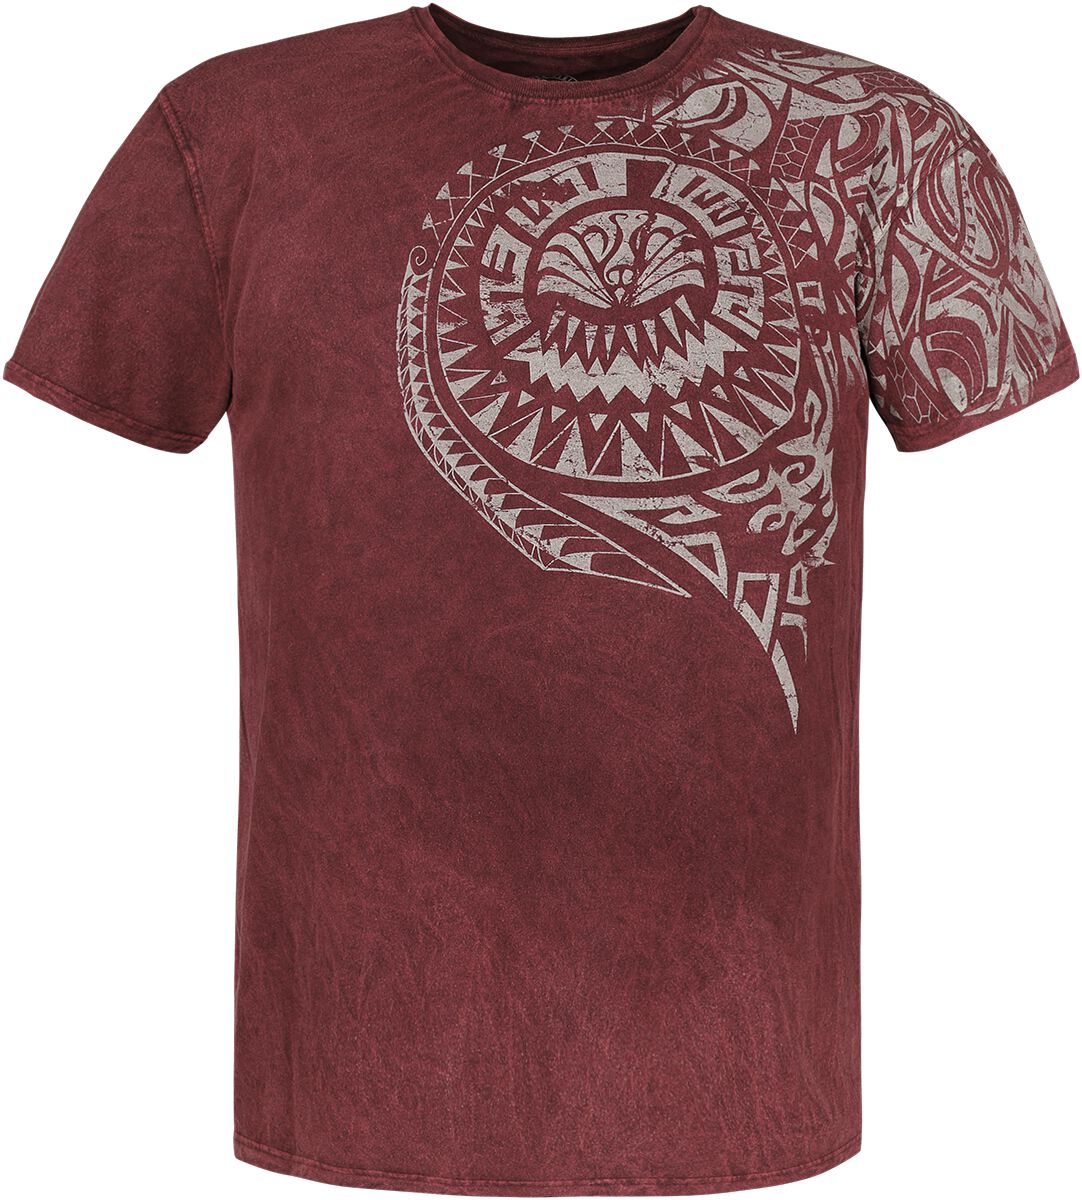 Outer Vision T-Shirt - Burned Tattoo - S bis 4XL - für Männer - Größe XL - rot